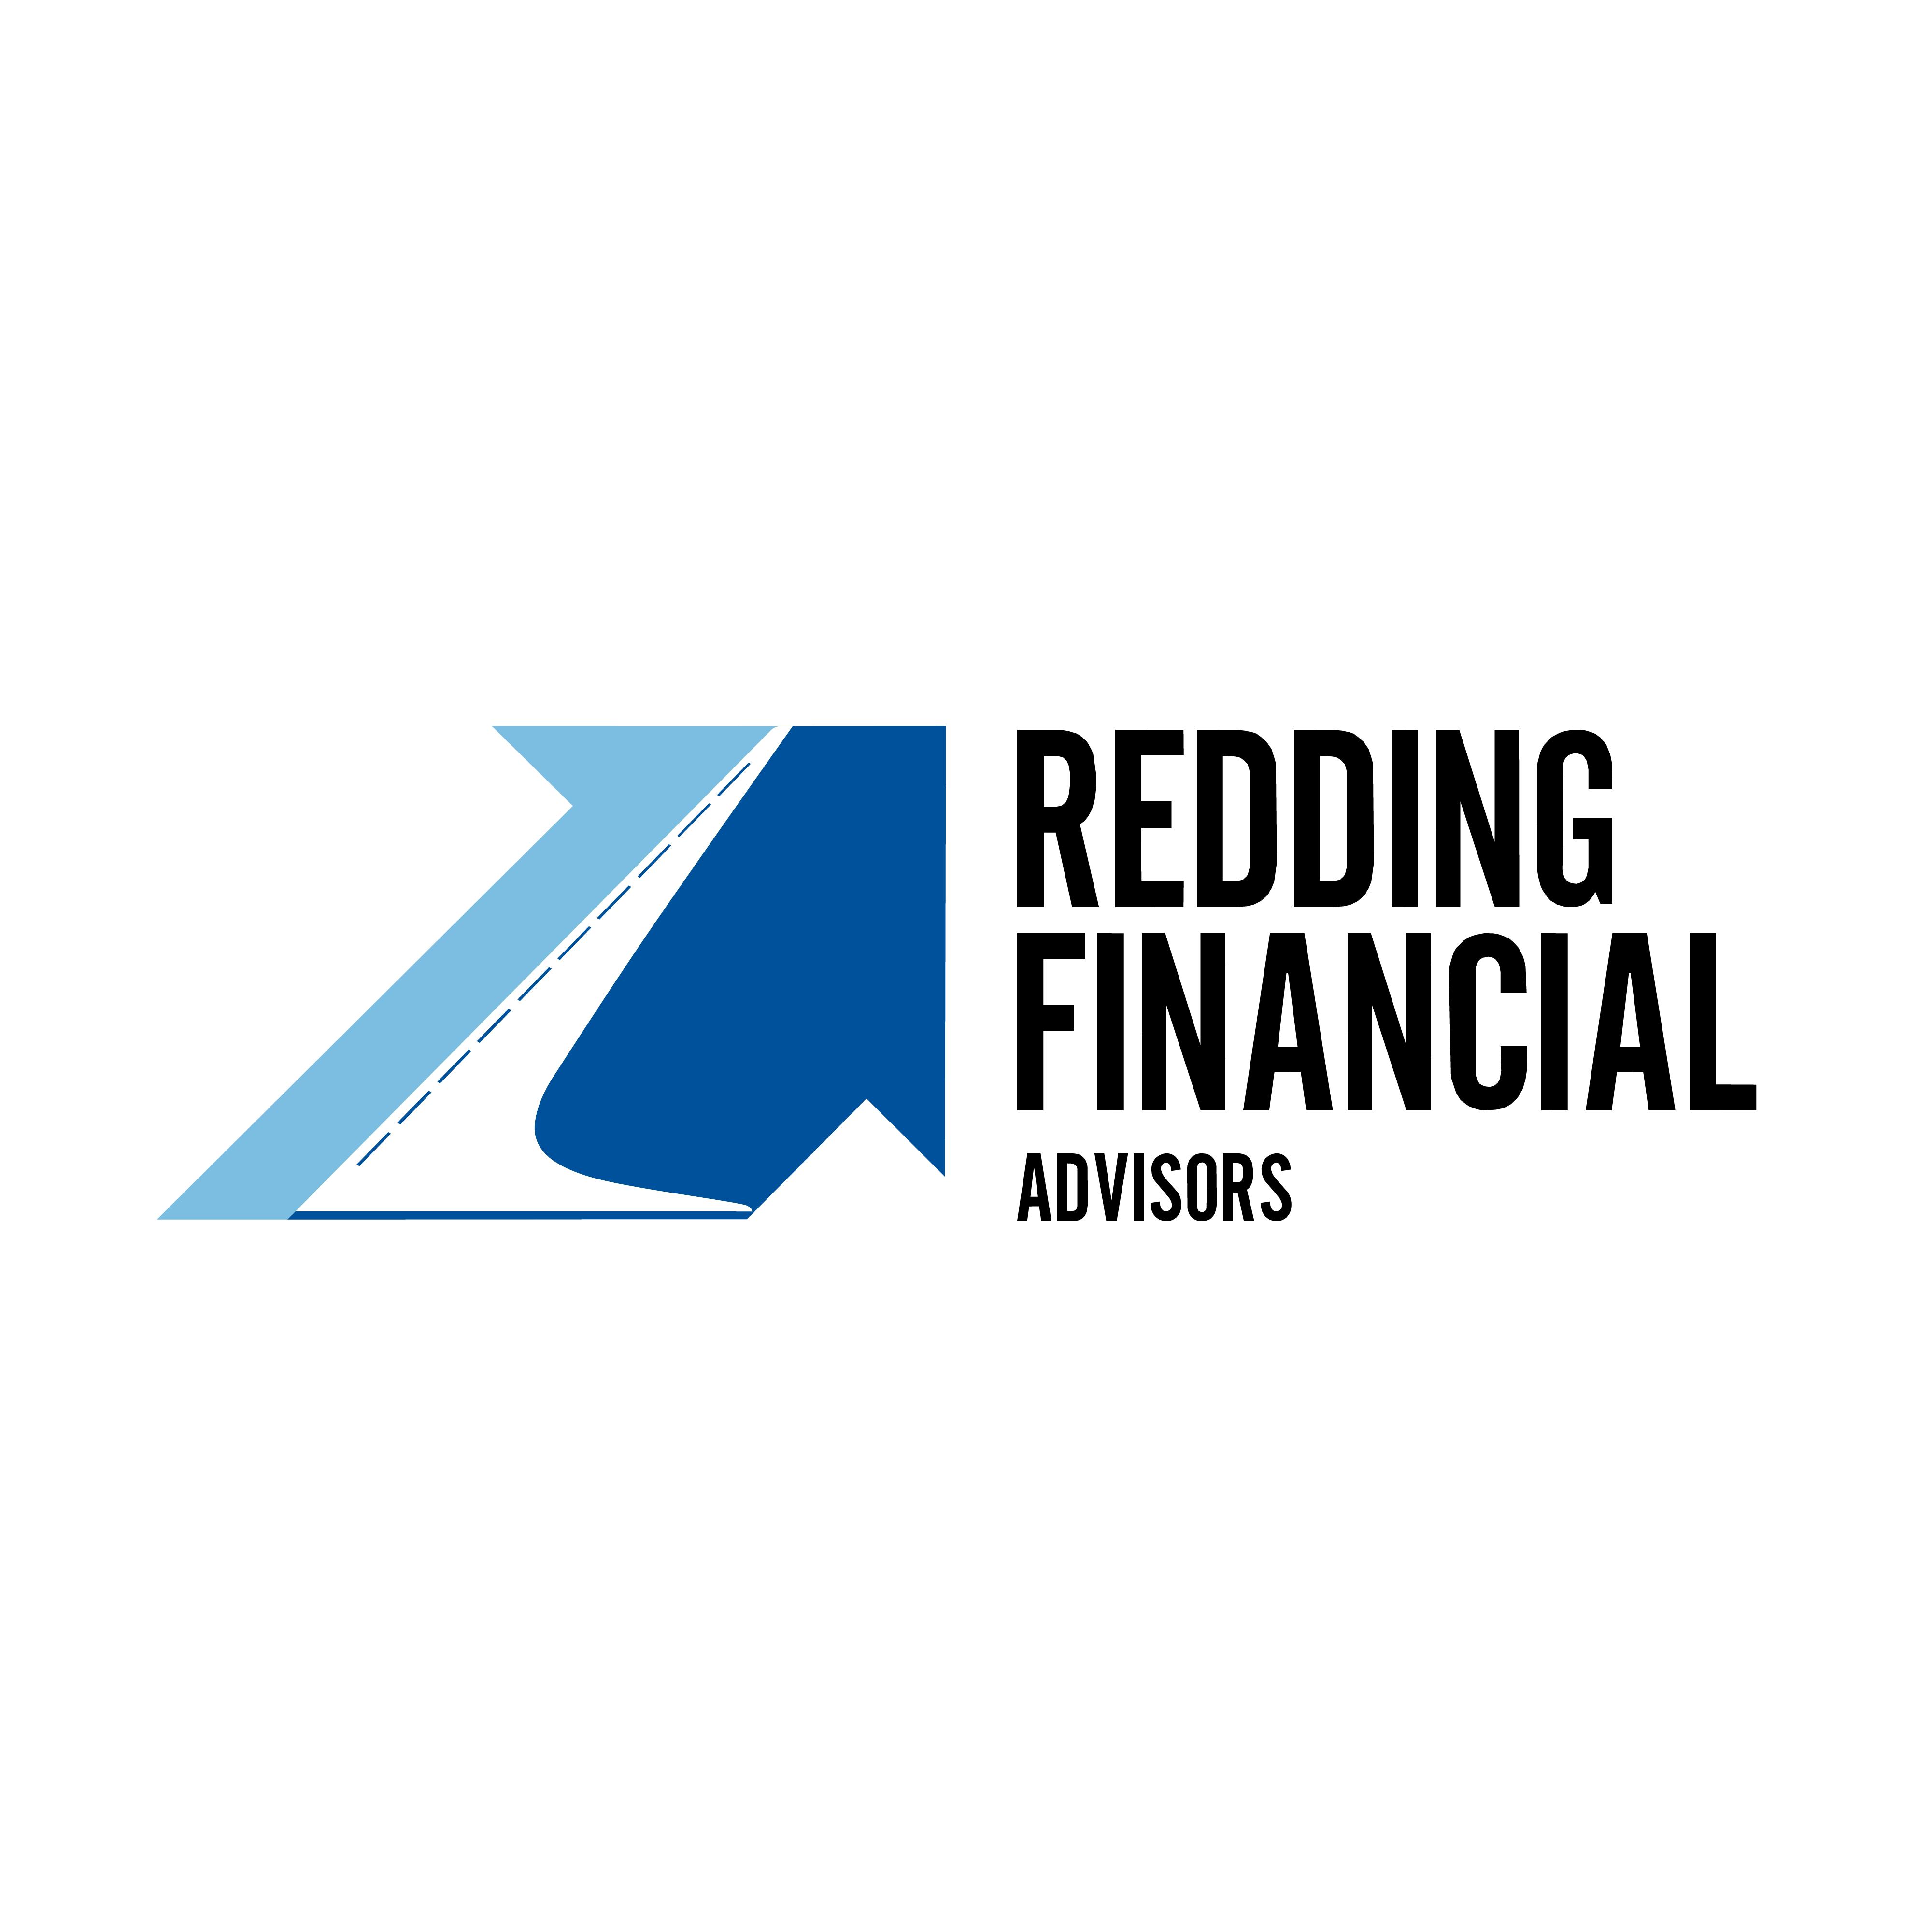 Redding Financial Advisors - Redding, CA 96002 - (530)248-6900 | ShowMeLocal.com